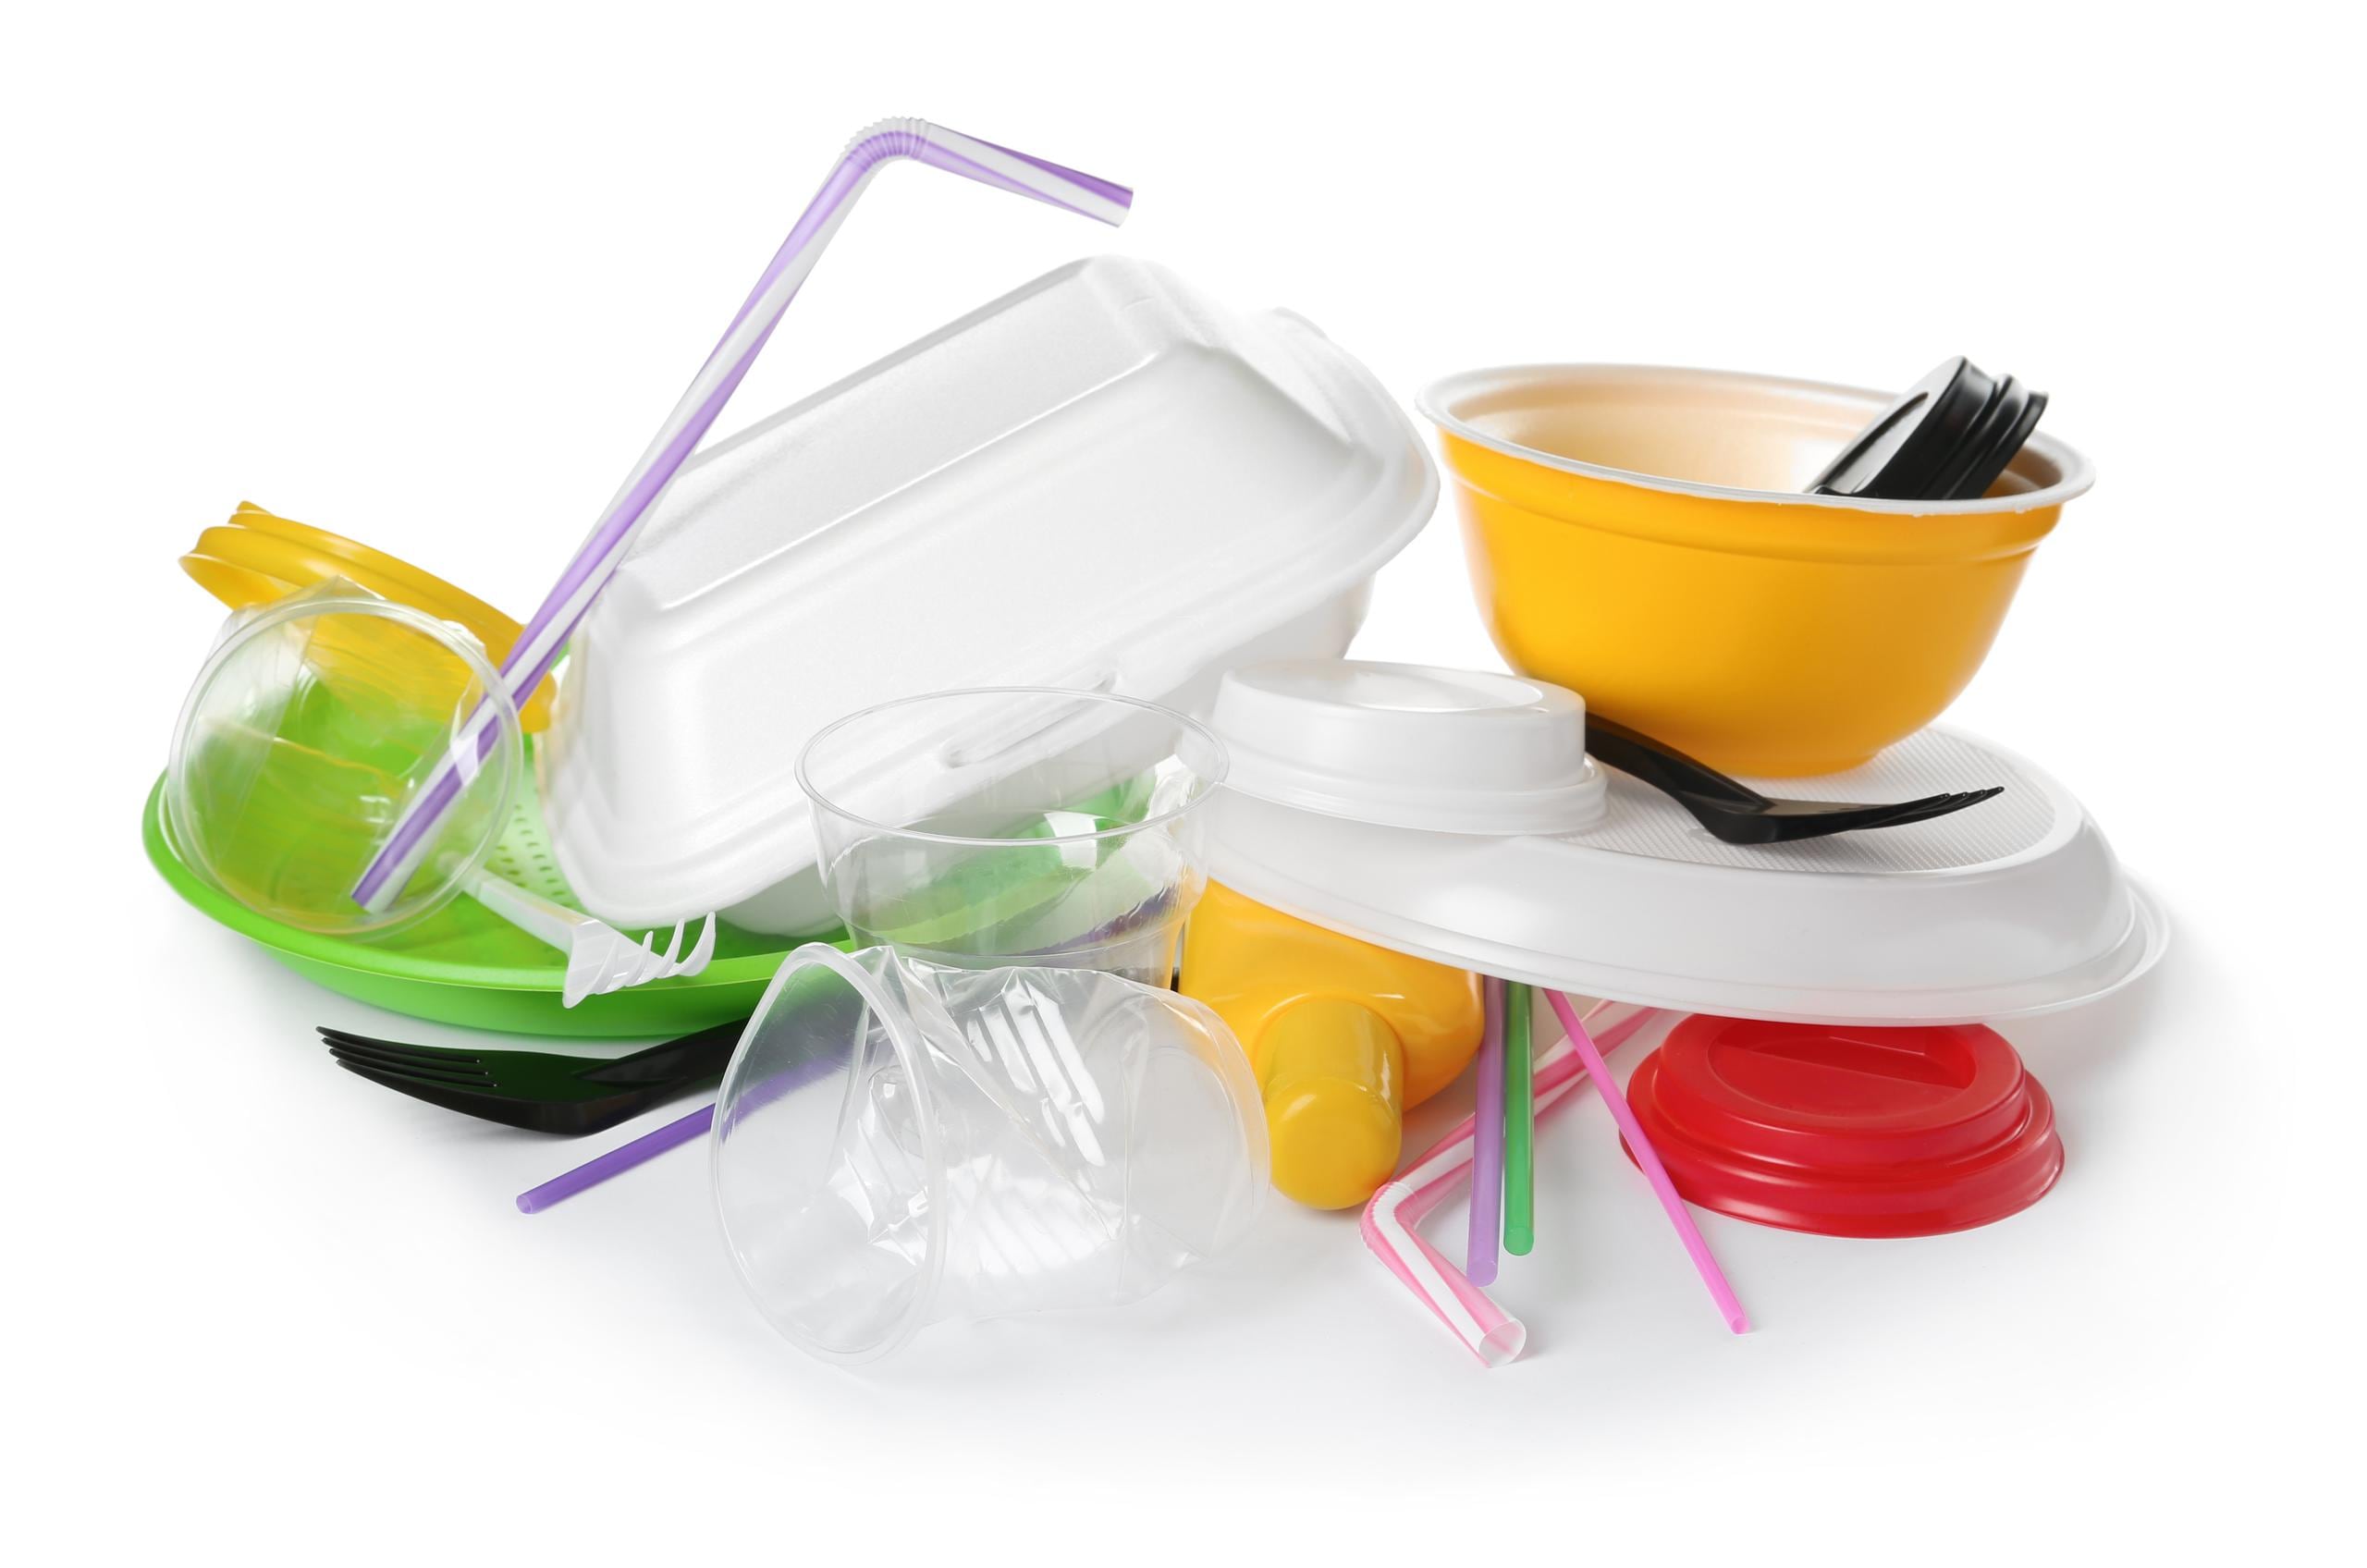 La ley define como plásticos de un solo uso: platos, cubiertos y sorbetos, así como, vasos, tazas y contenedores de poliestireno expandido (foam).